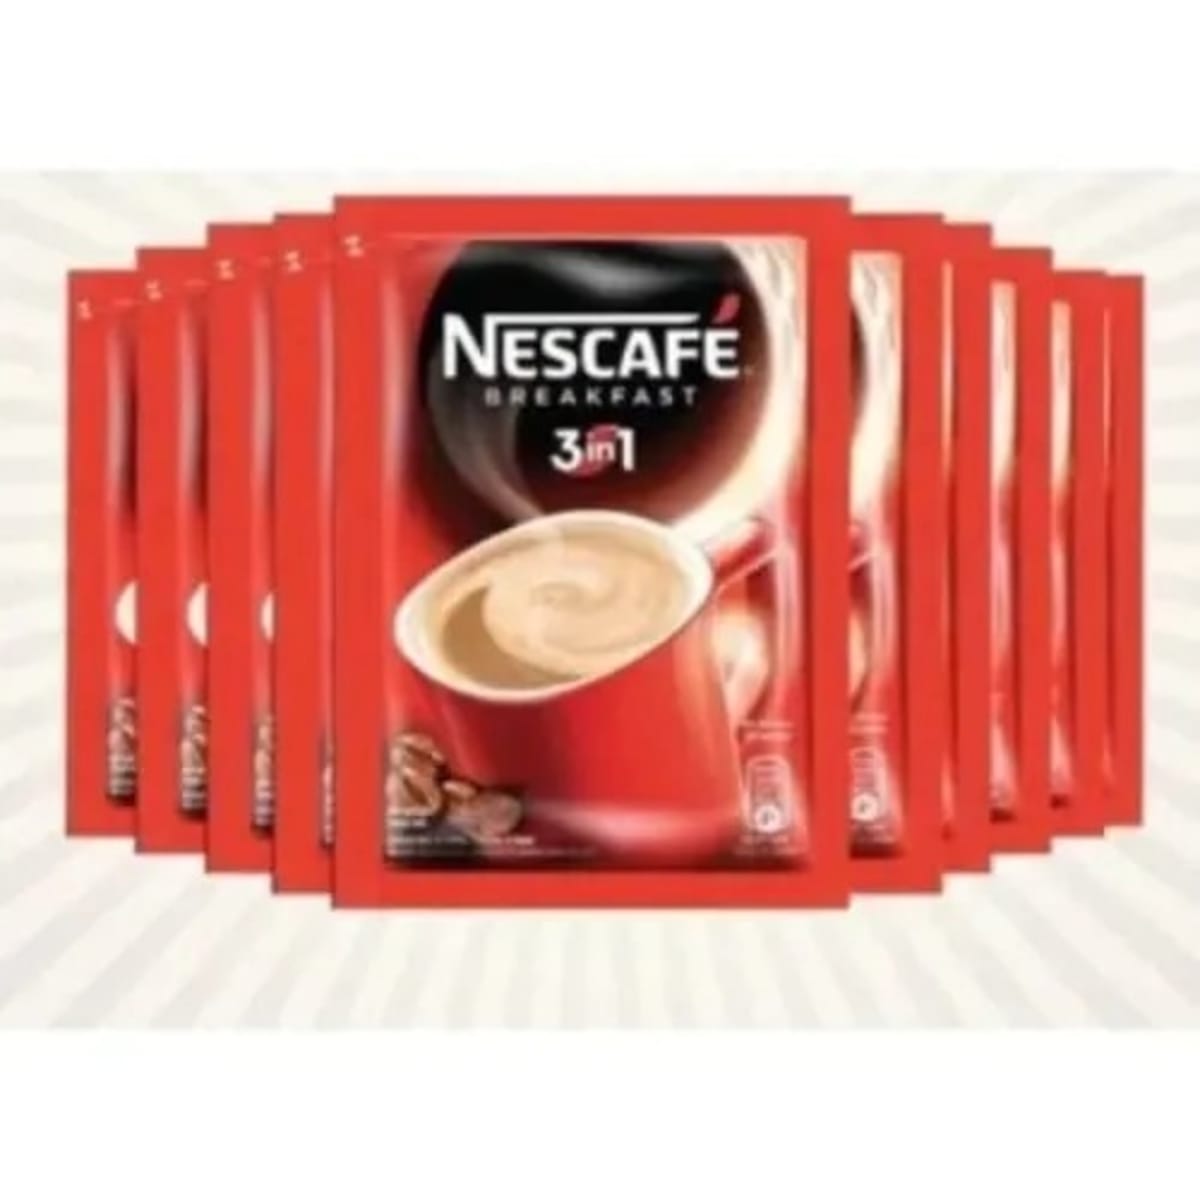 Nestle 3 In 1 Nescafe Breakfast - 25g - Carton Of 200